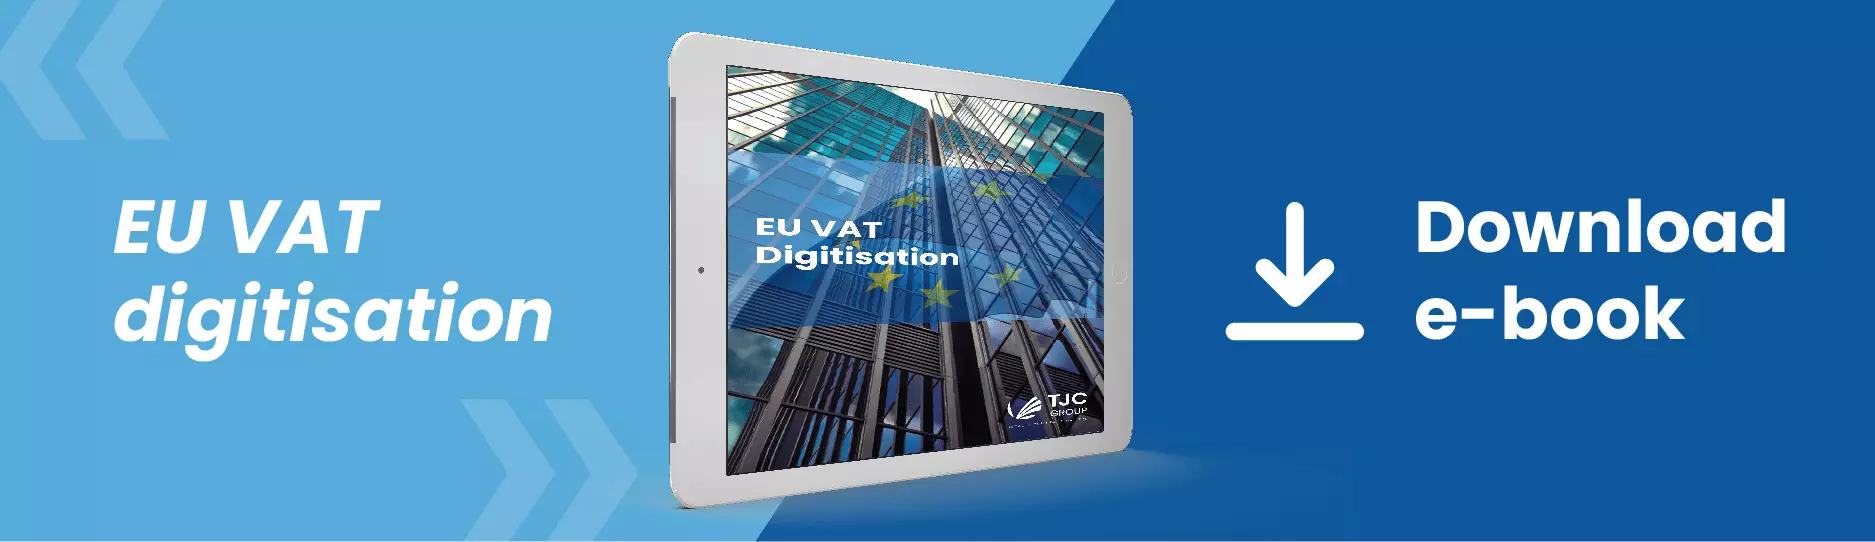 EU VAT E-book-download | TJC Group